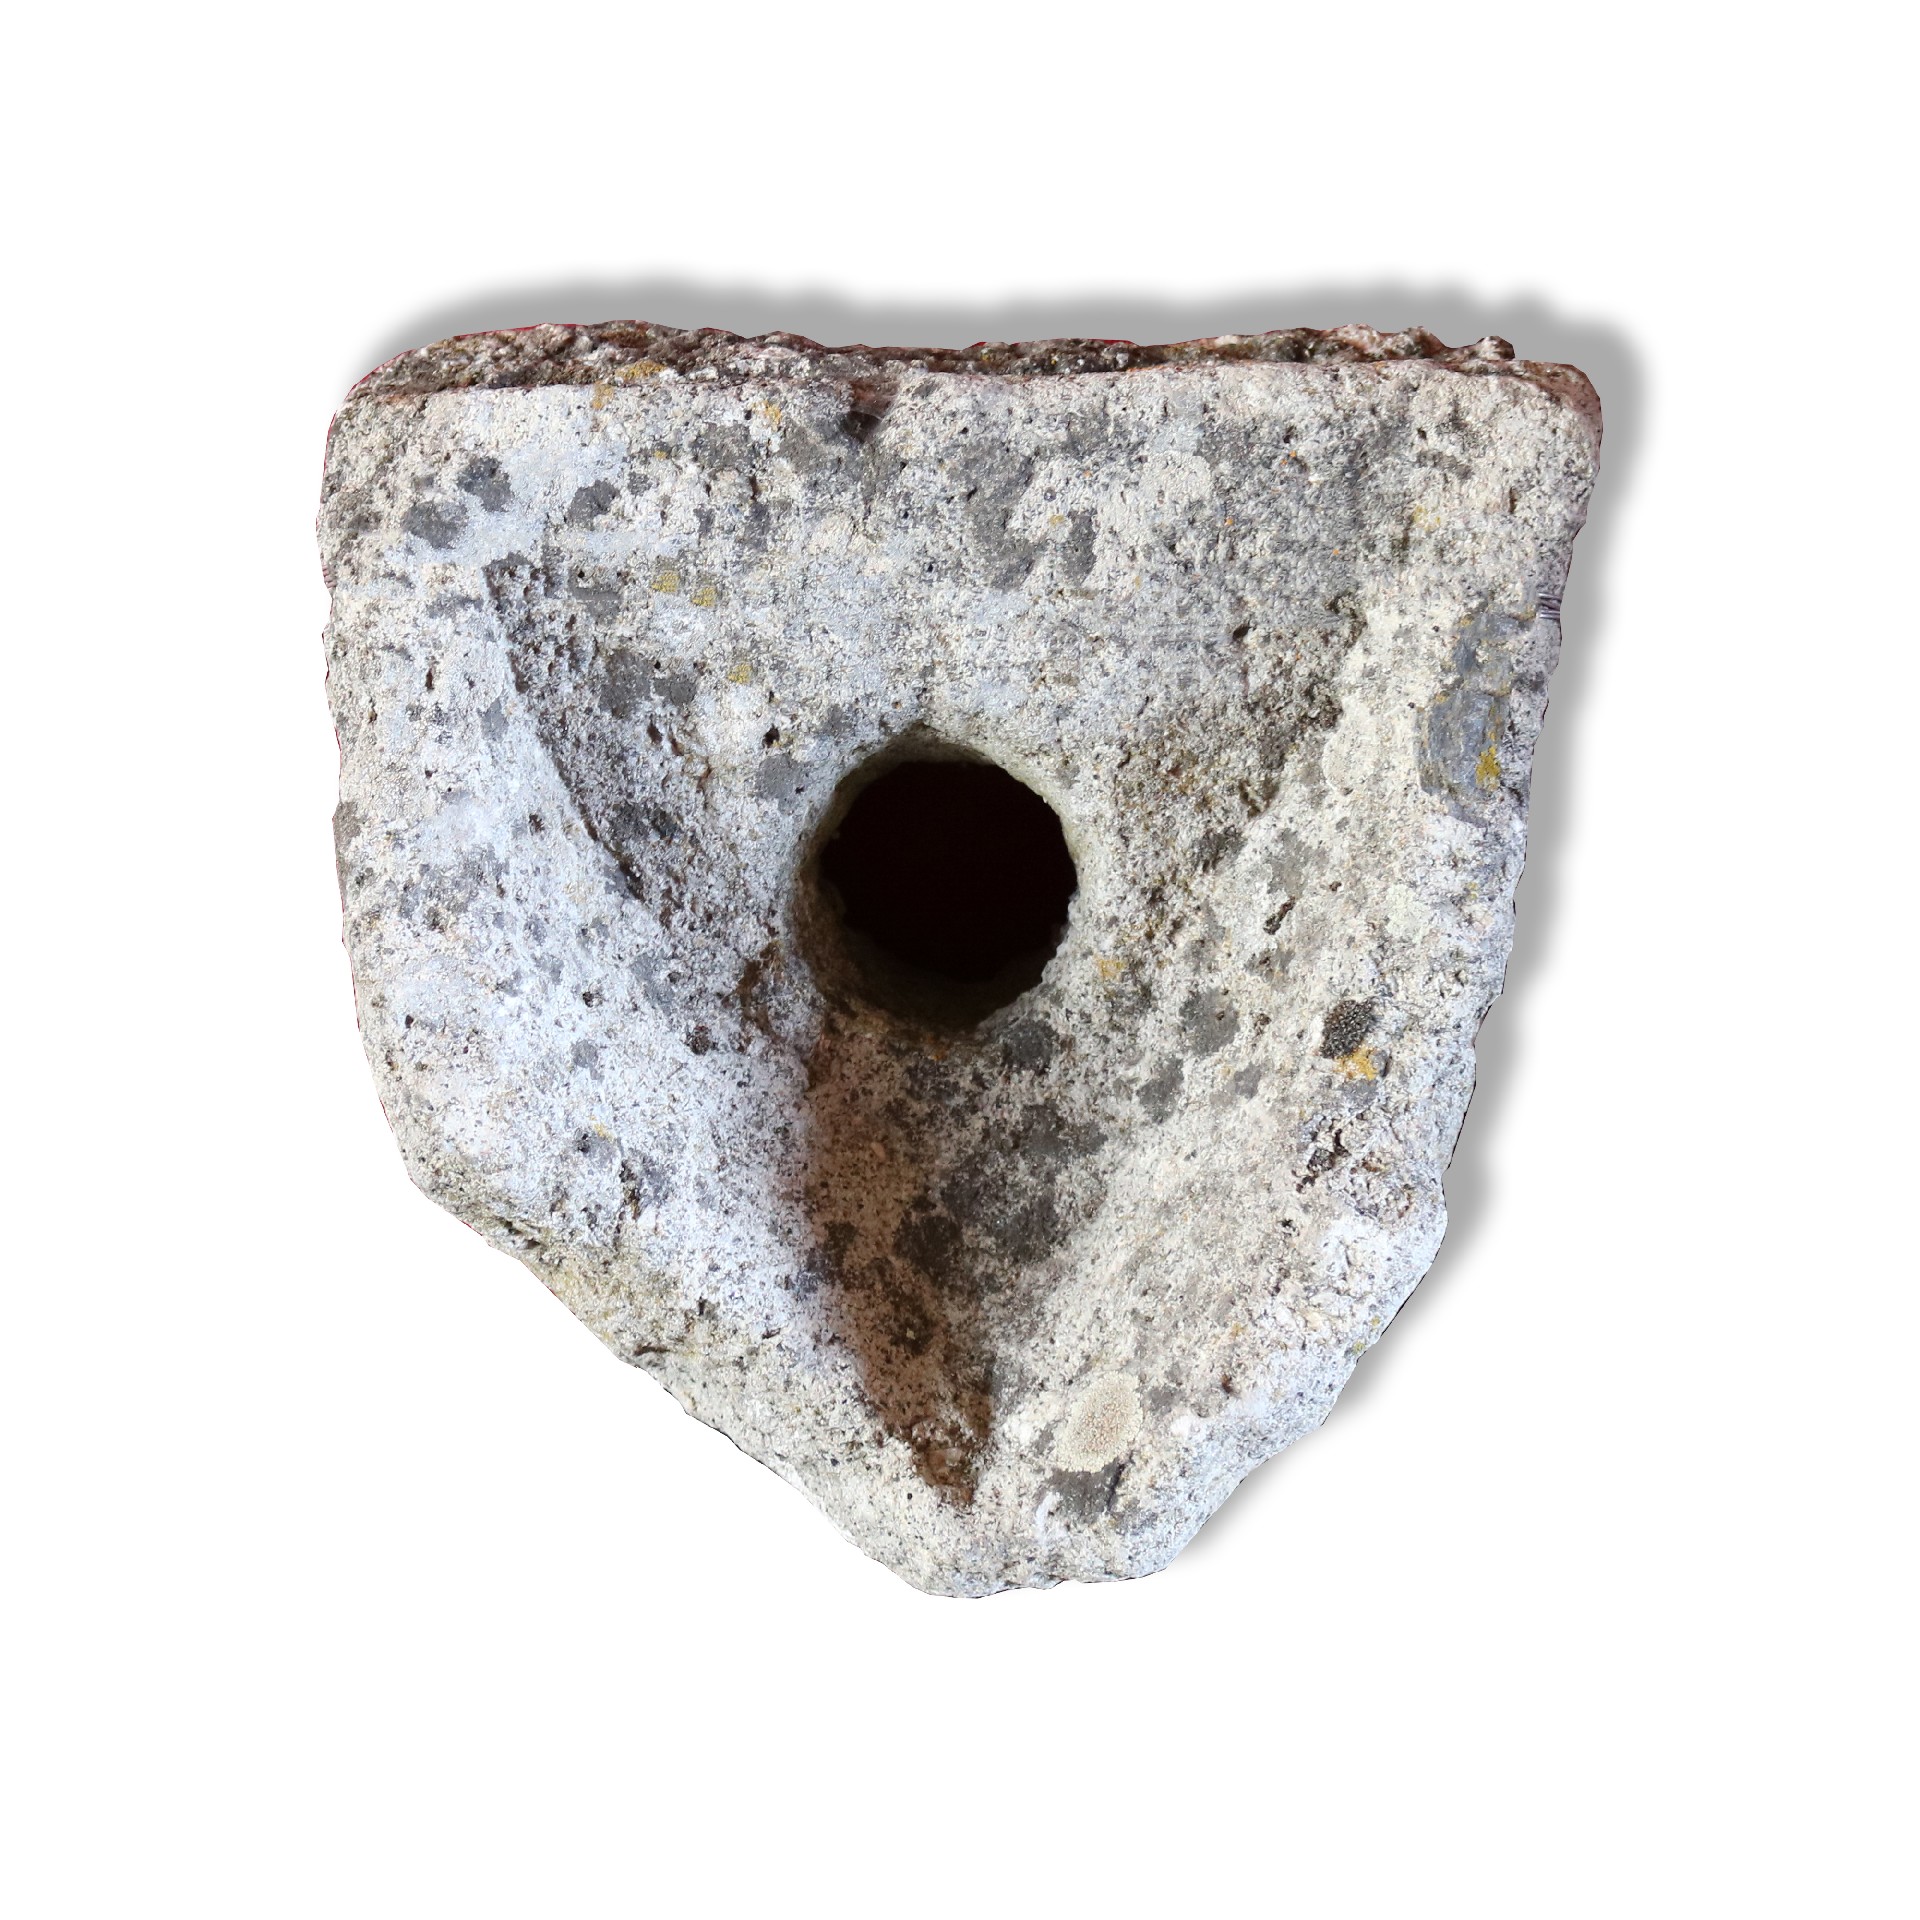 Antico pannello buttacqua in pietra. - Mascheroni Antichi - Arredo Giardino - Prodotti - Antichità Fiorillo